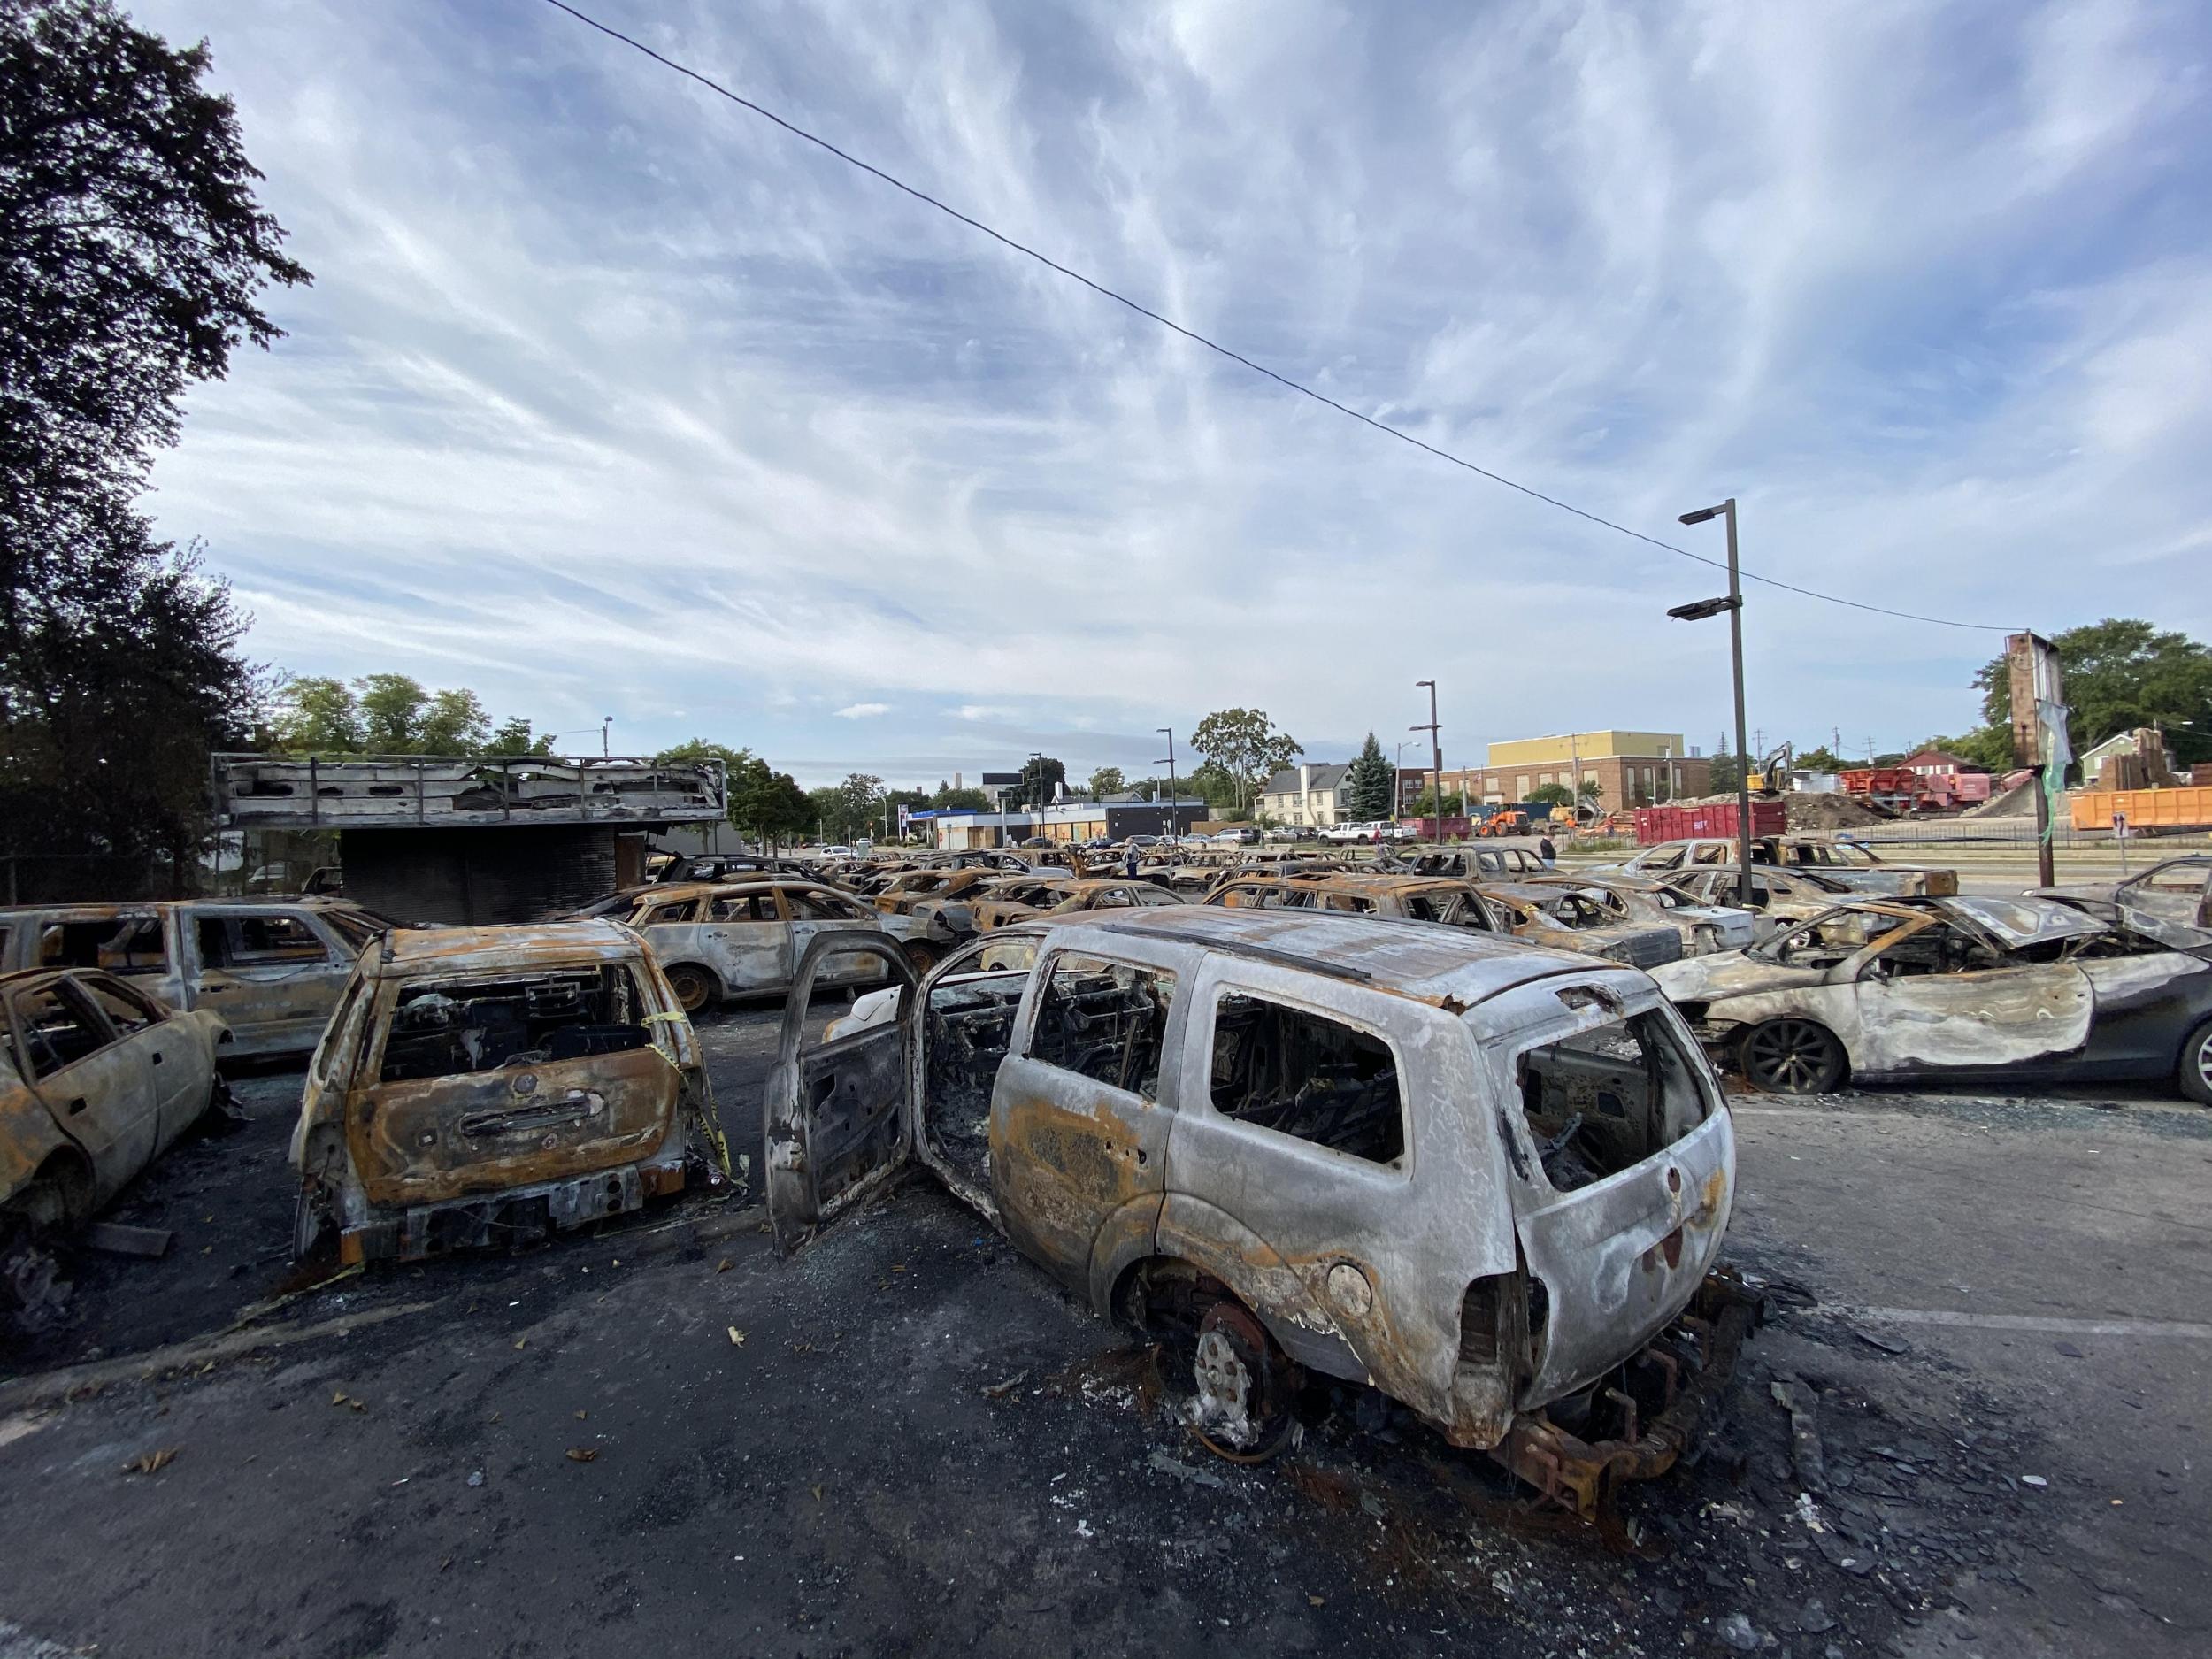 Imagen de coches que fueron quemados durante las recientes protestas en Kenosha, Wisconsin.